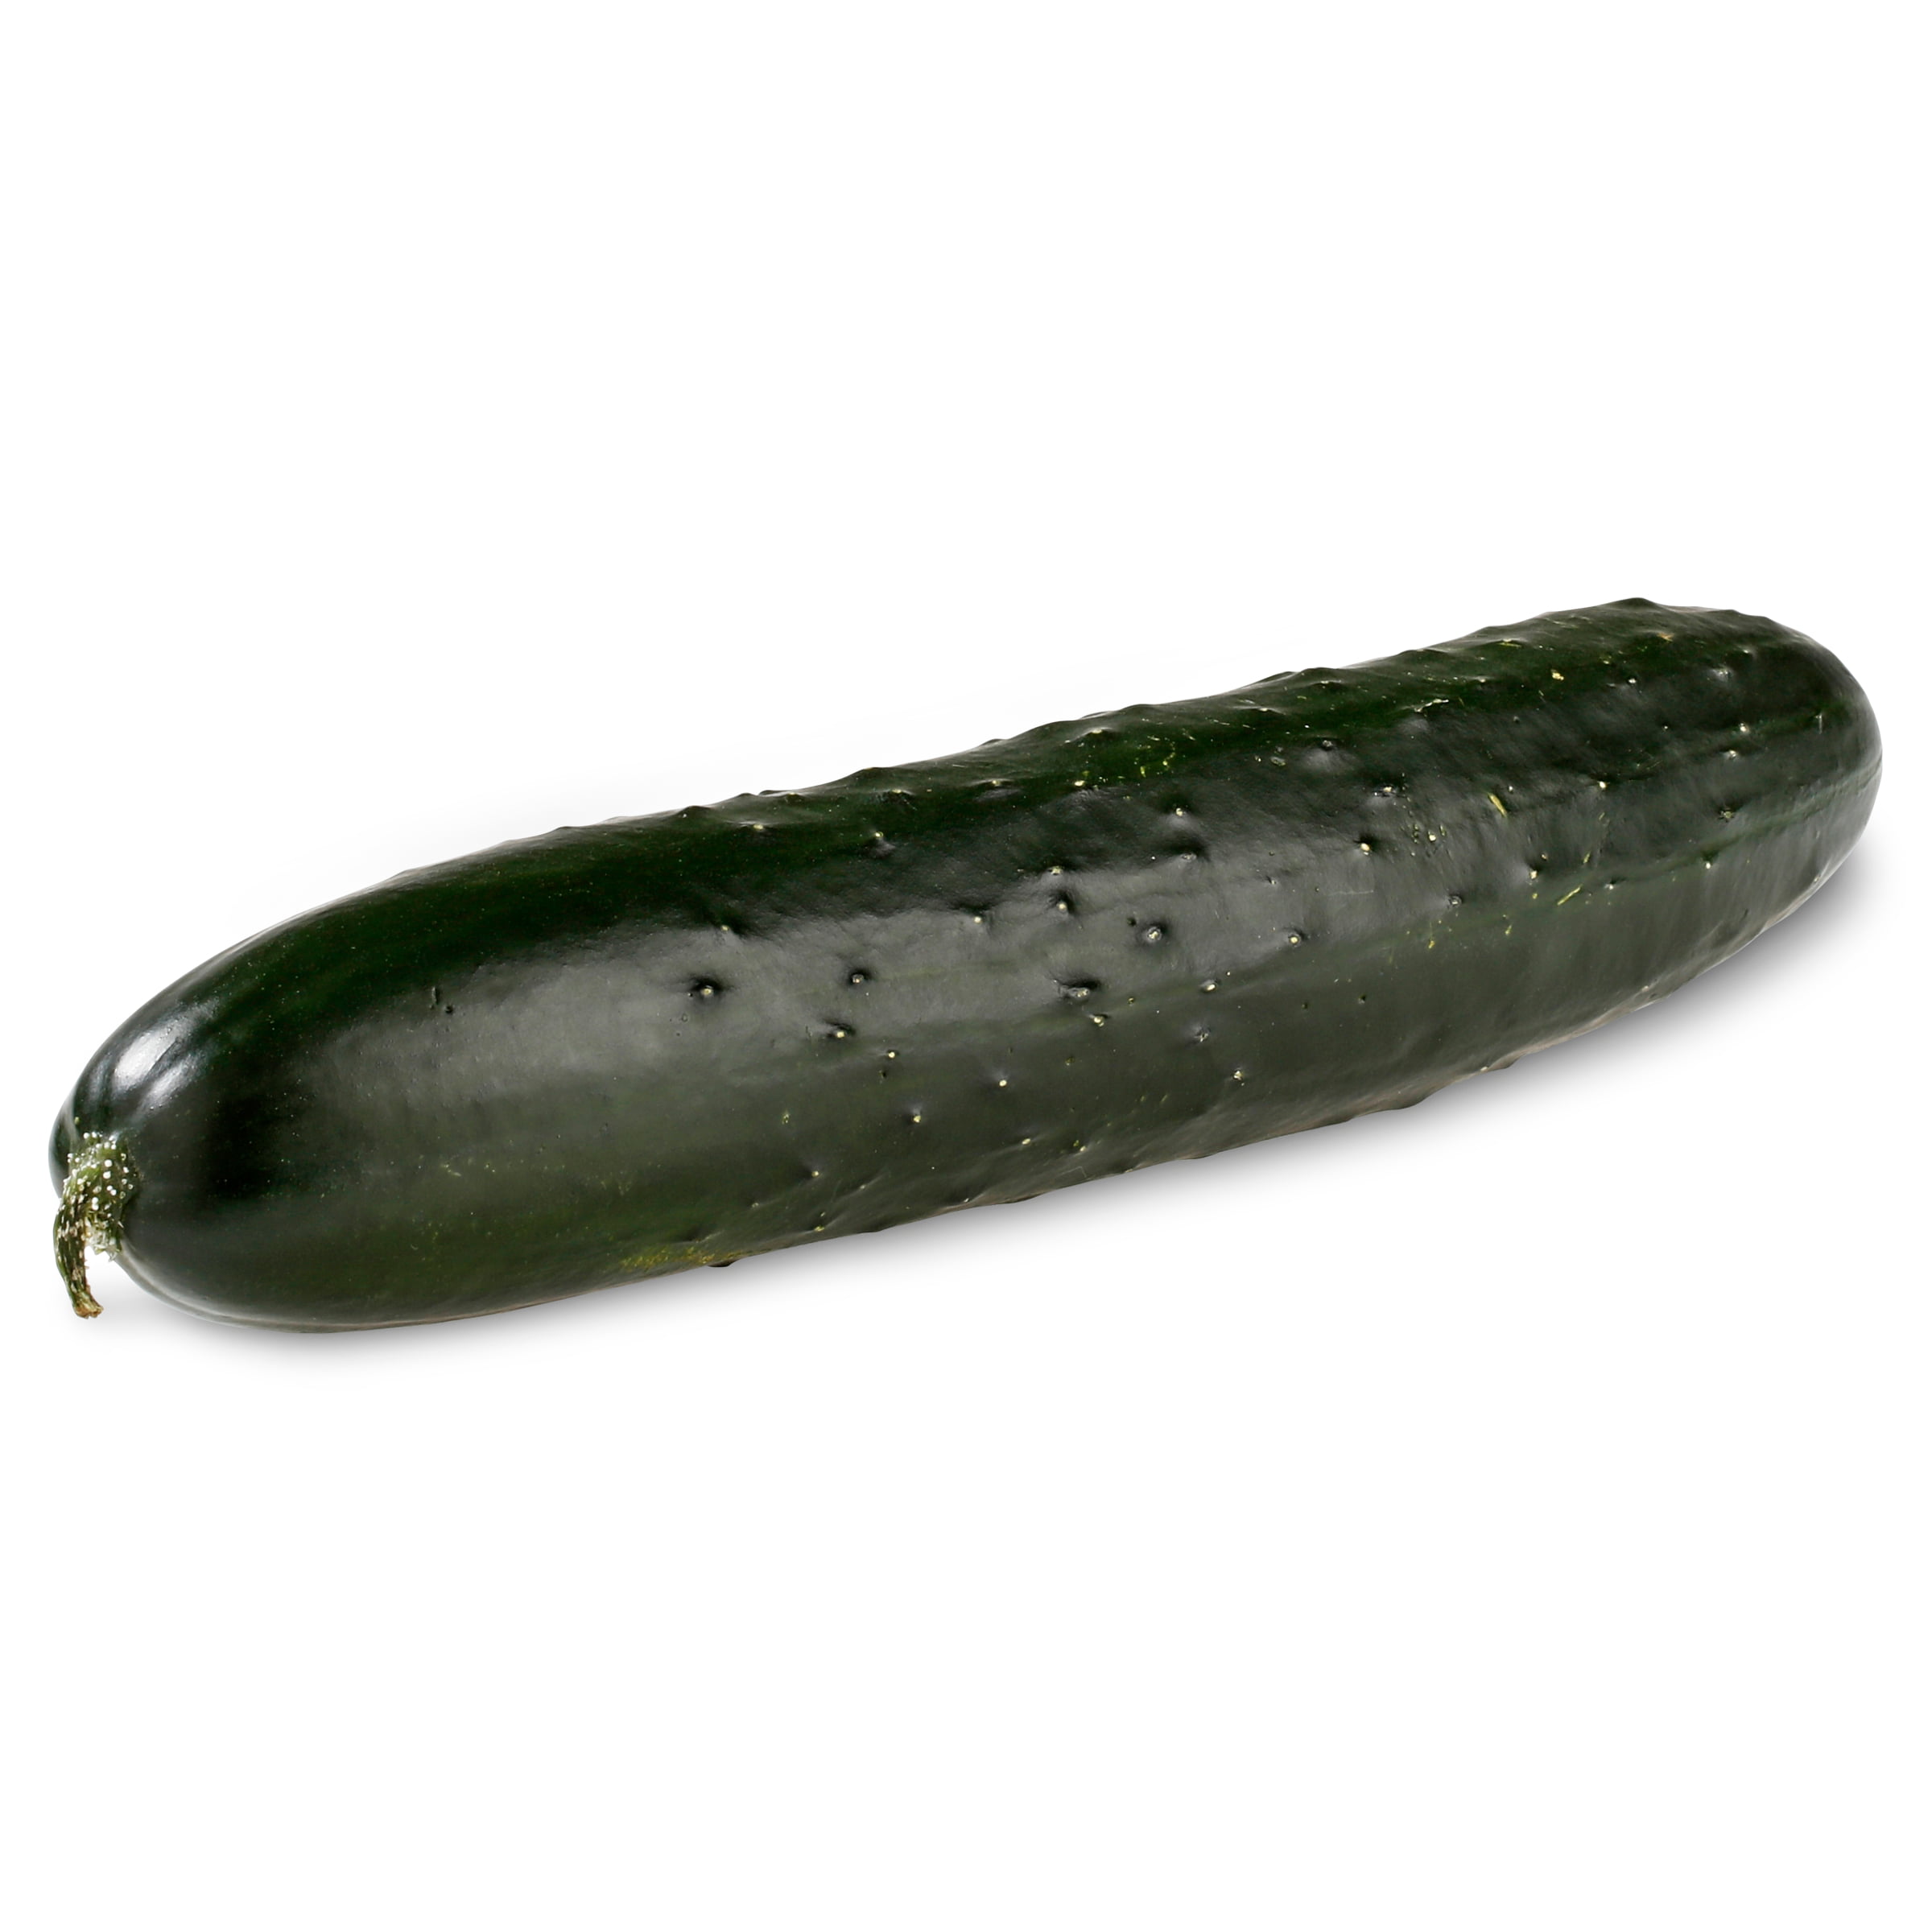 Fresh-Cucumber-Each_5985ccc8-109e-411d-a